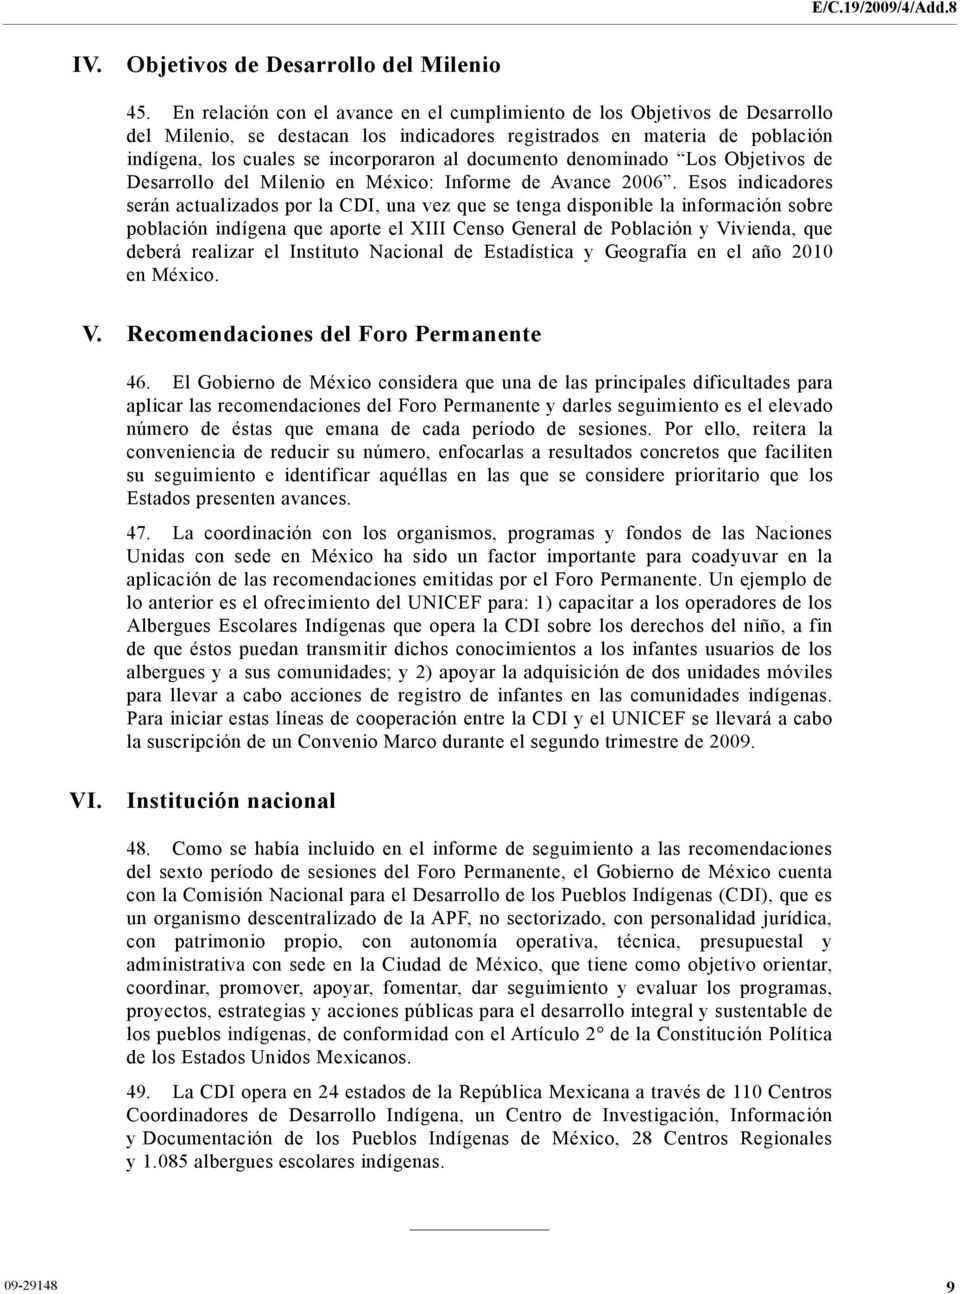 documento denominado Los Objetivos de Desarrollo del Milenio en México: Informe de Avance 2006.